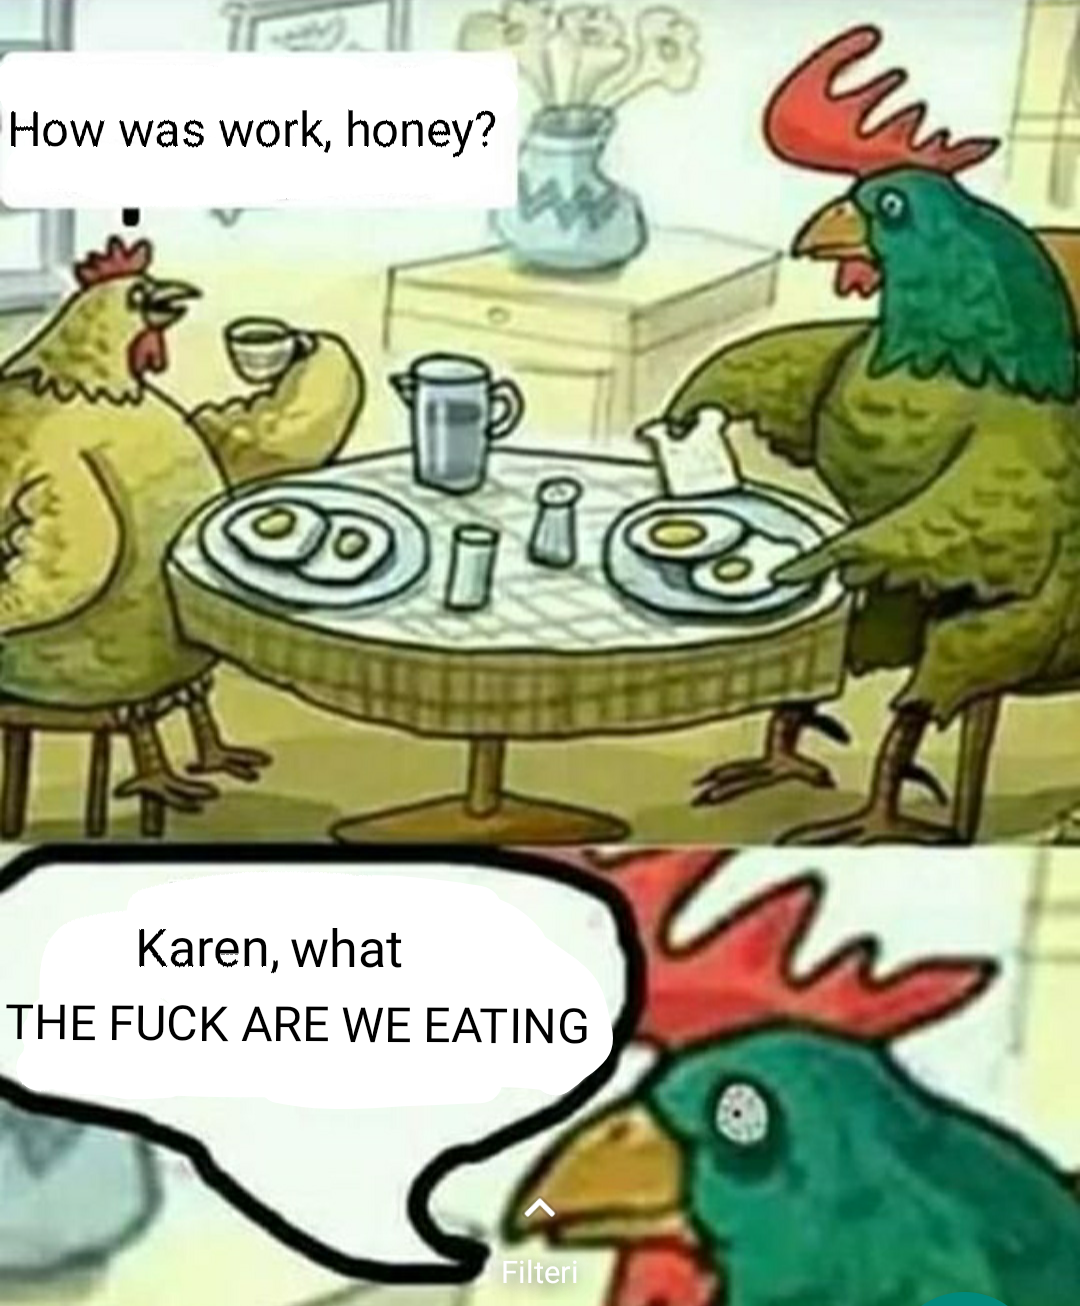 Karen went ham